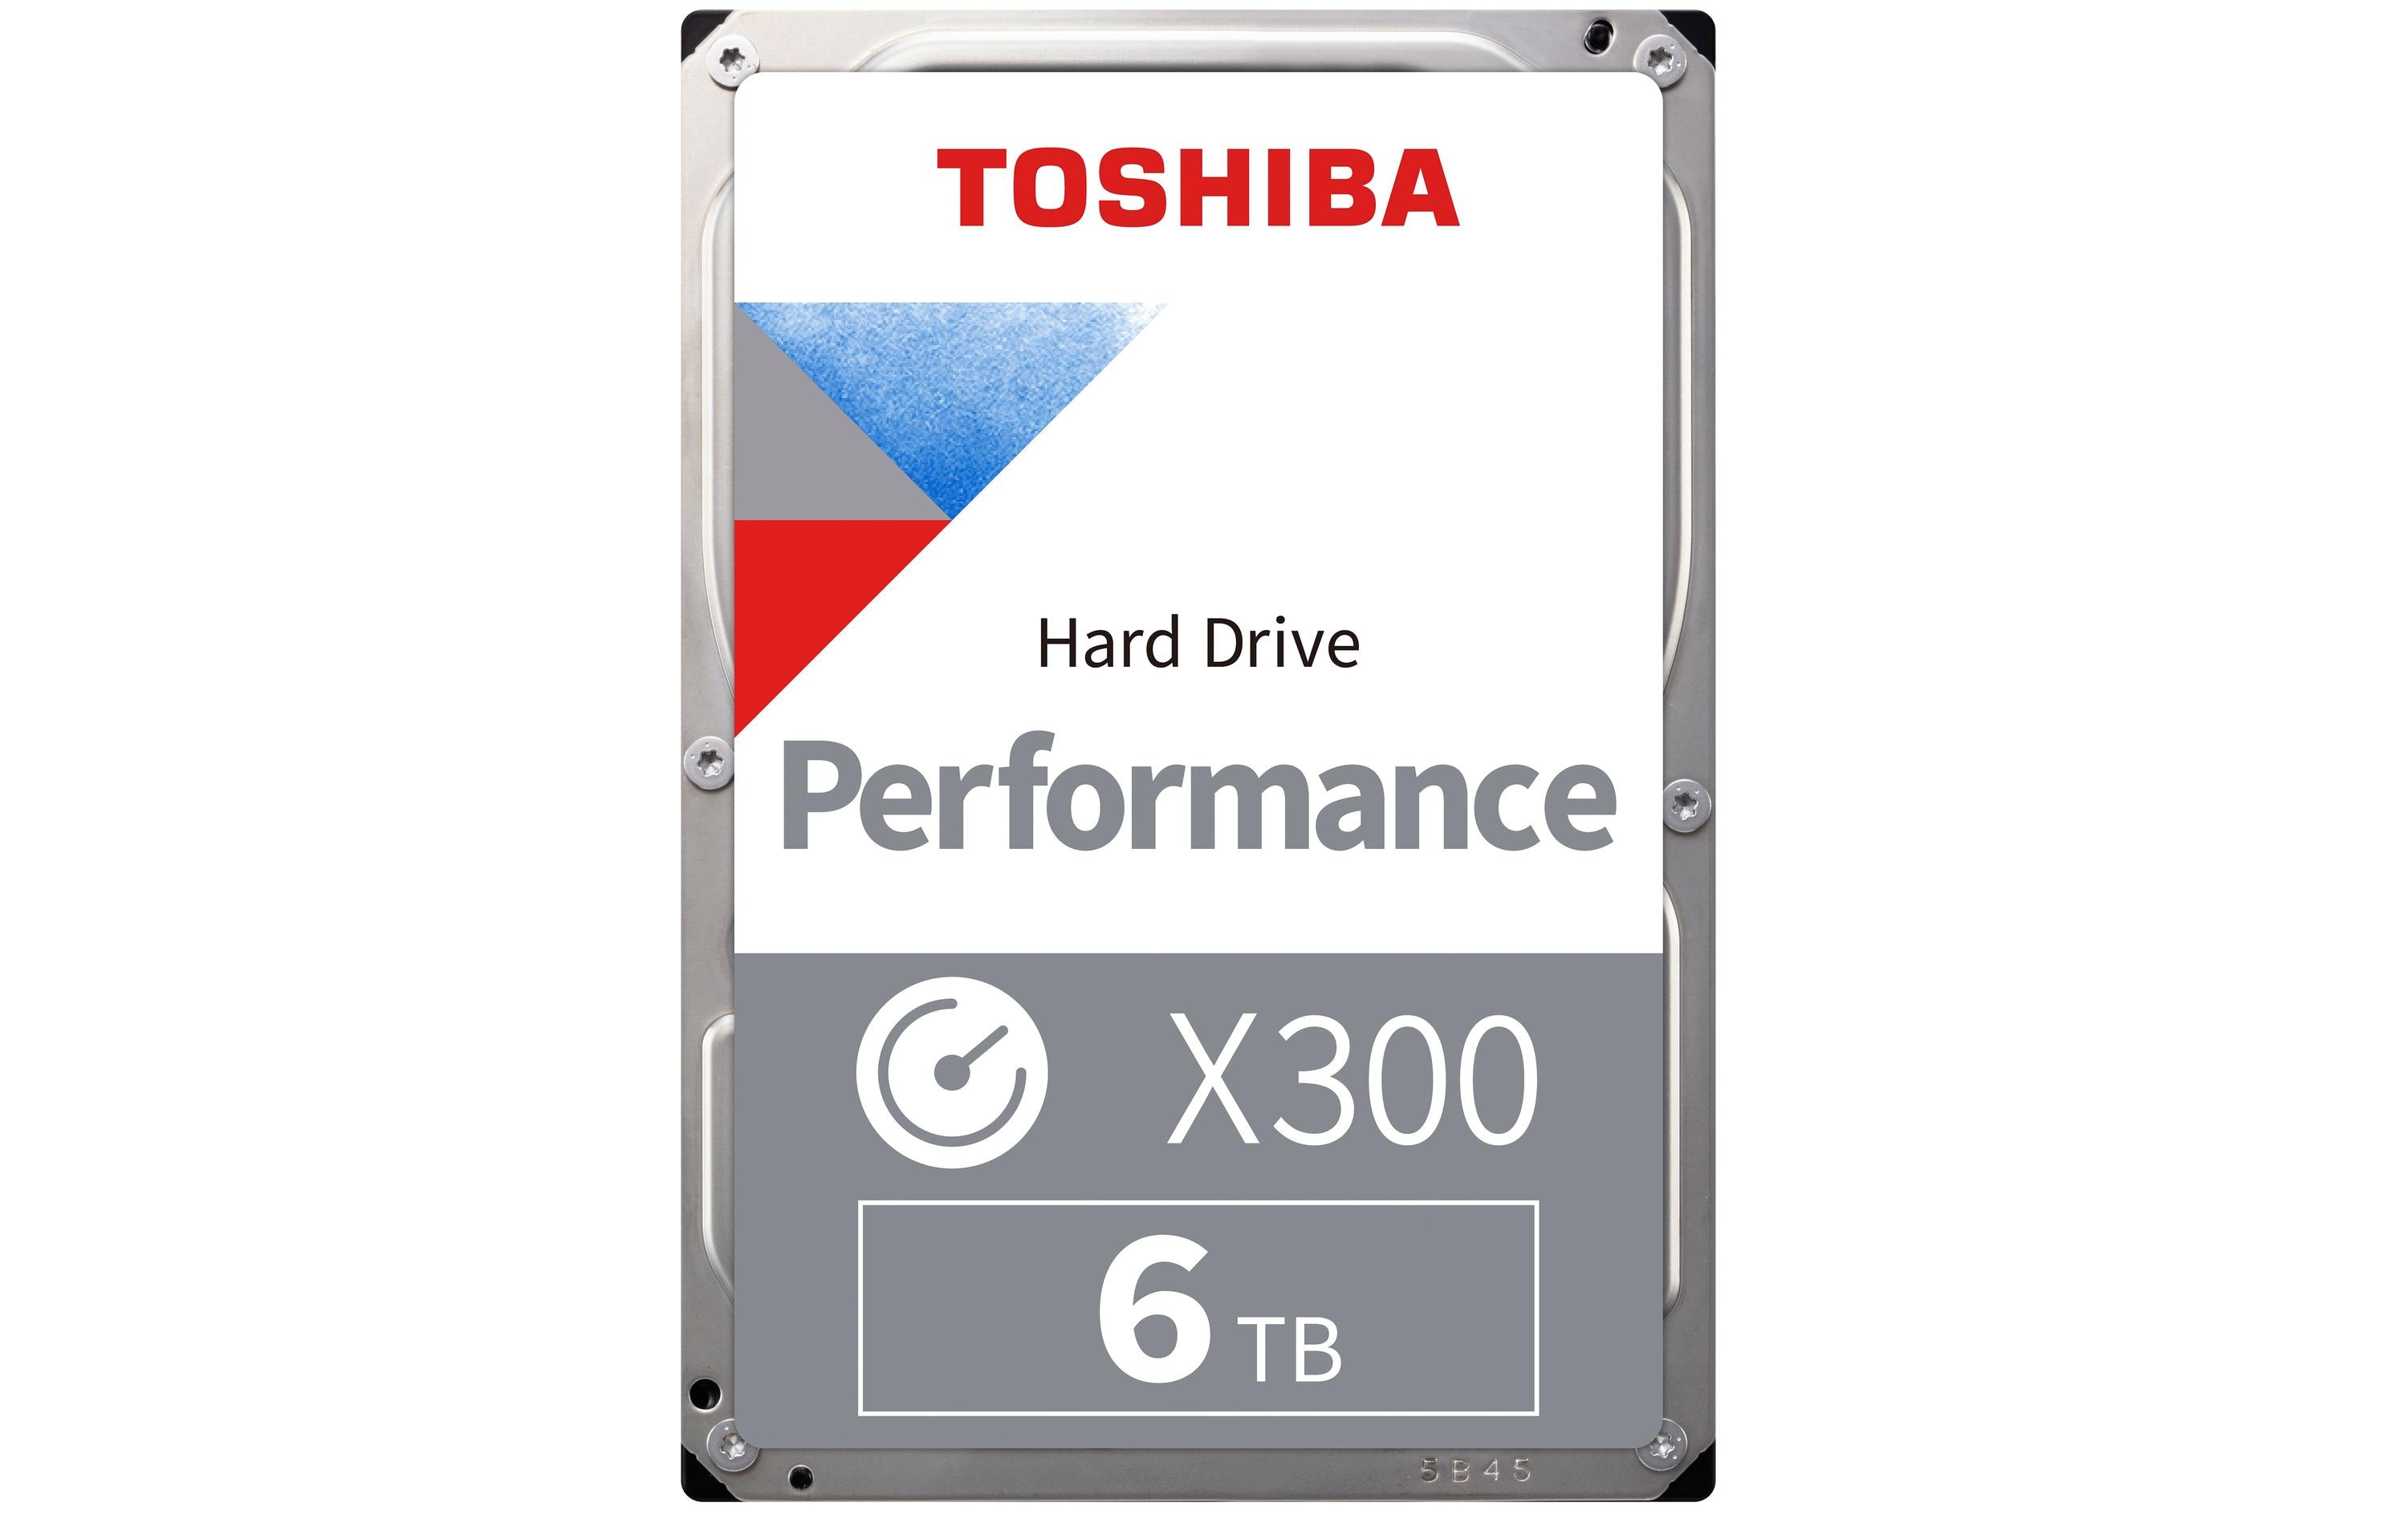 Toshiba Harddisk X300 3.5 SATA 6 TB